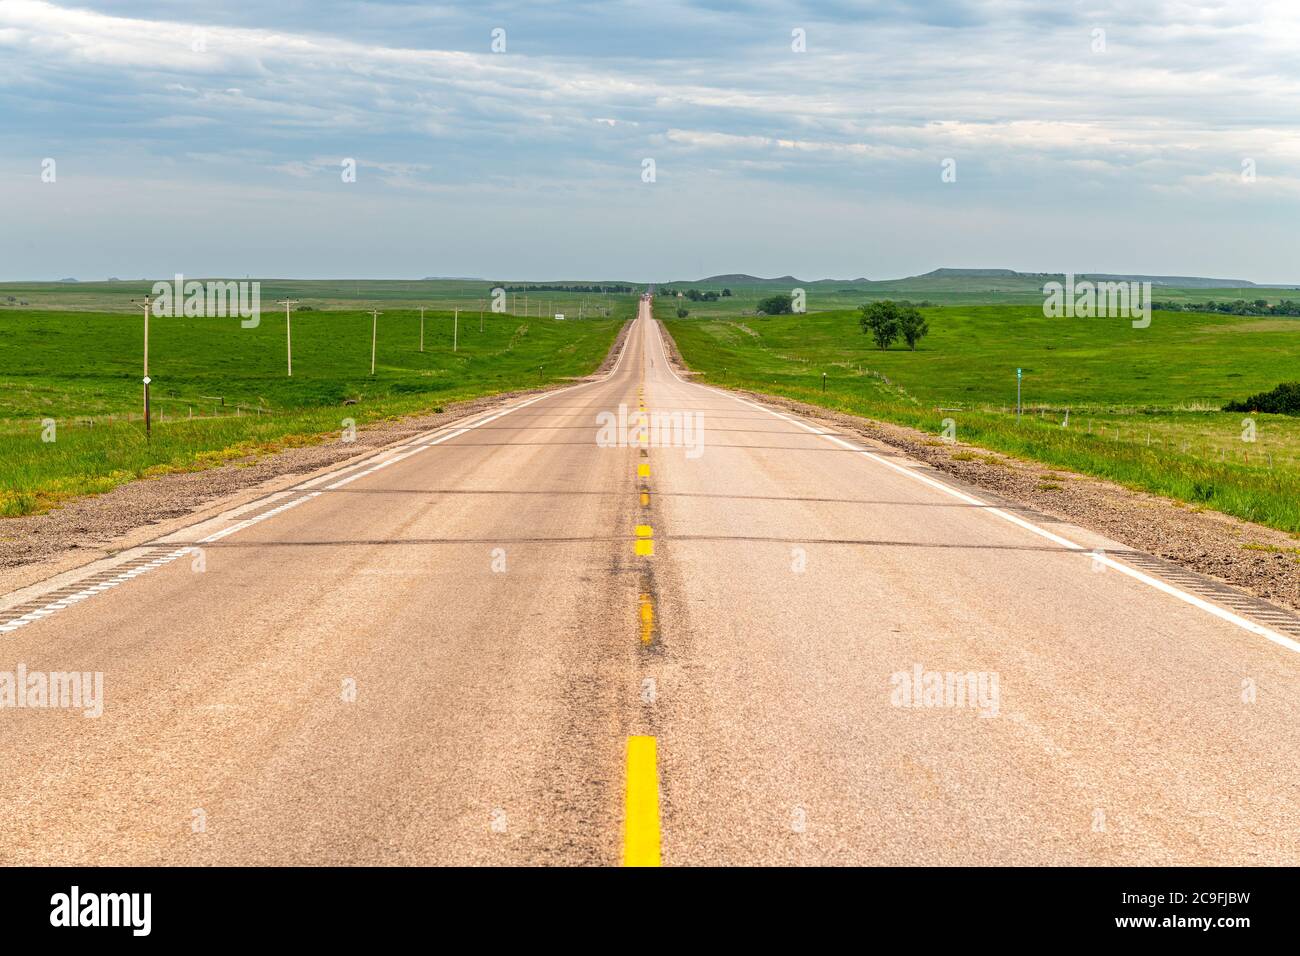 Abnehmende Perspektive einer ländlichen Straße in der Great Plains, umgeben von grünen Ackerland und riesigen Ländern. Stockfoto